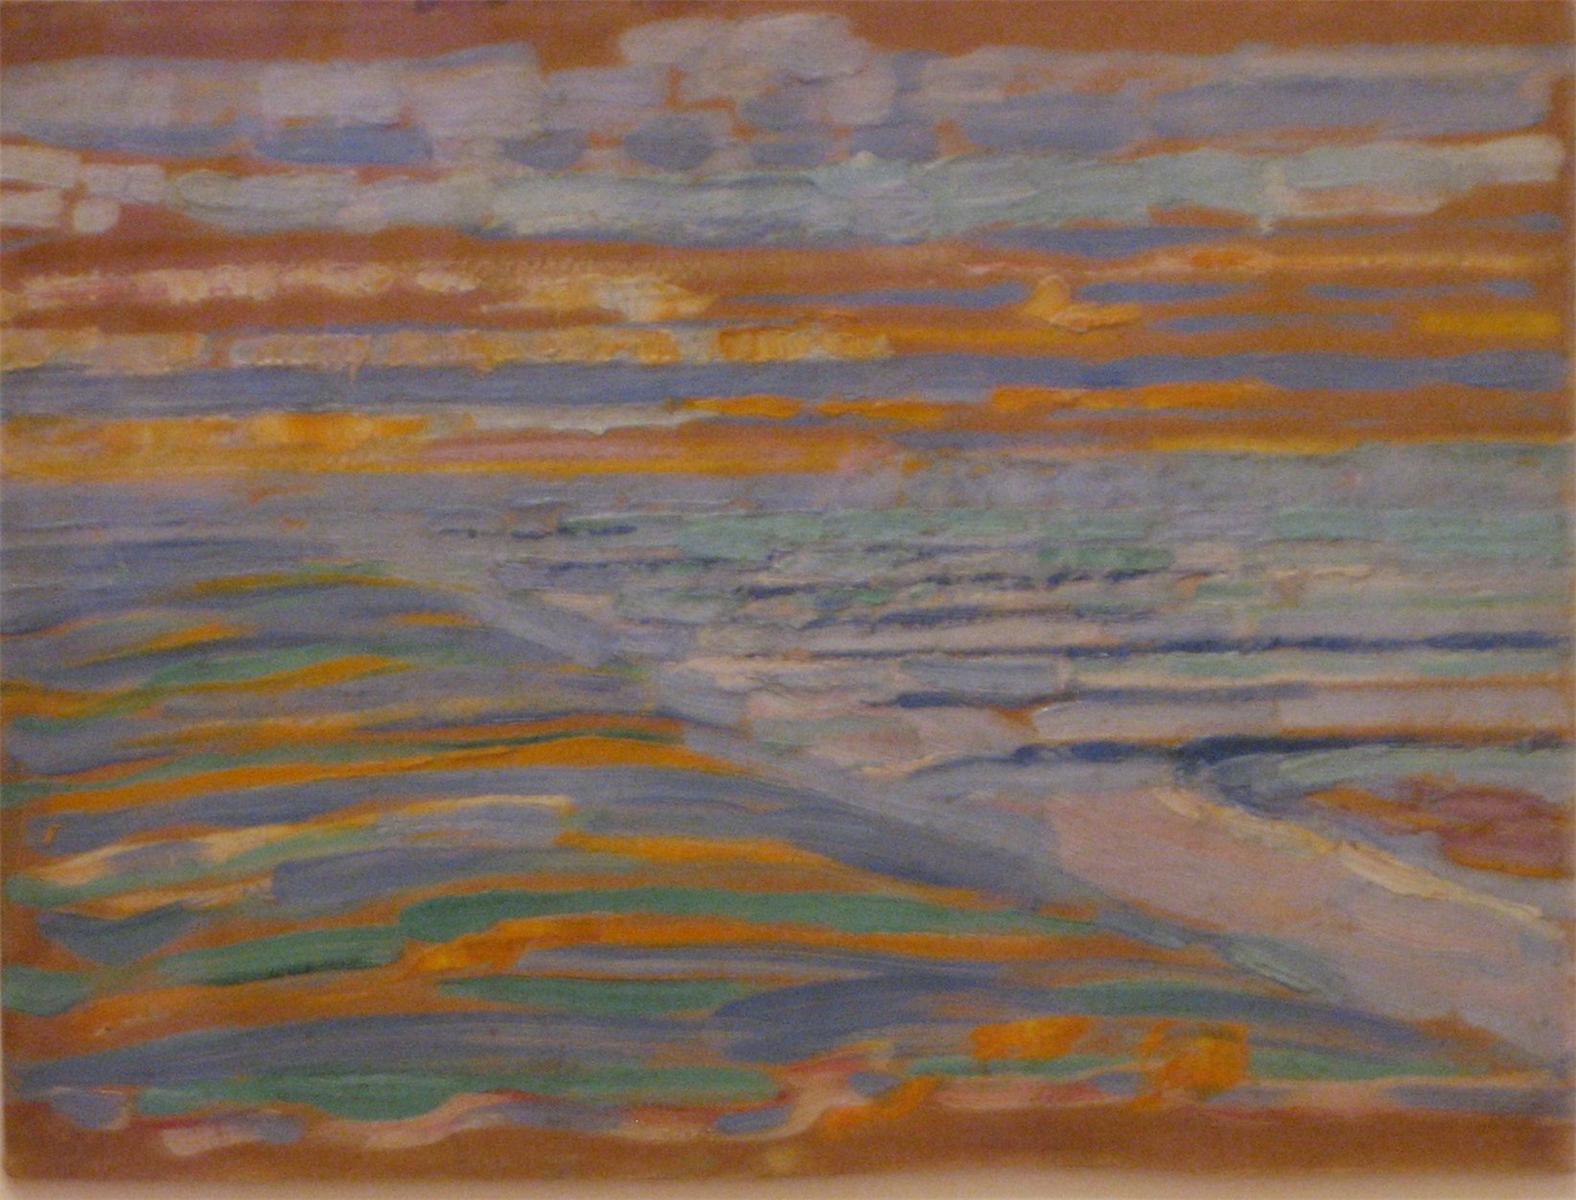 Vue depuis les dunes avec plage et jetées by Piet Mondrian - 1909 Museum of Modern Art